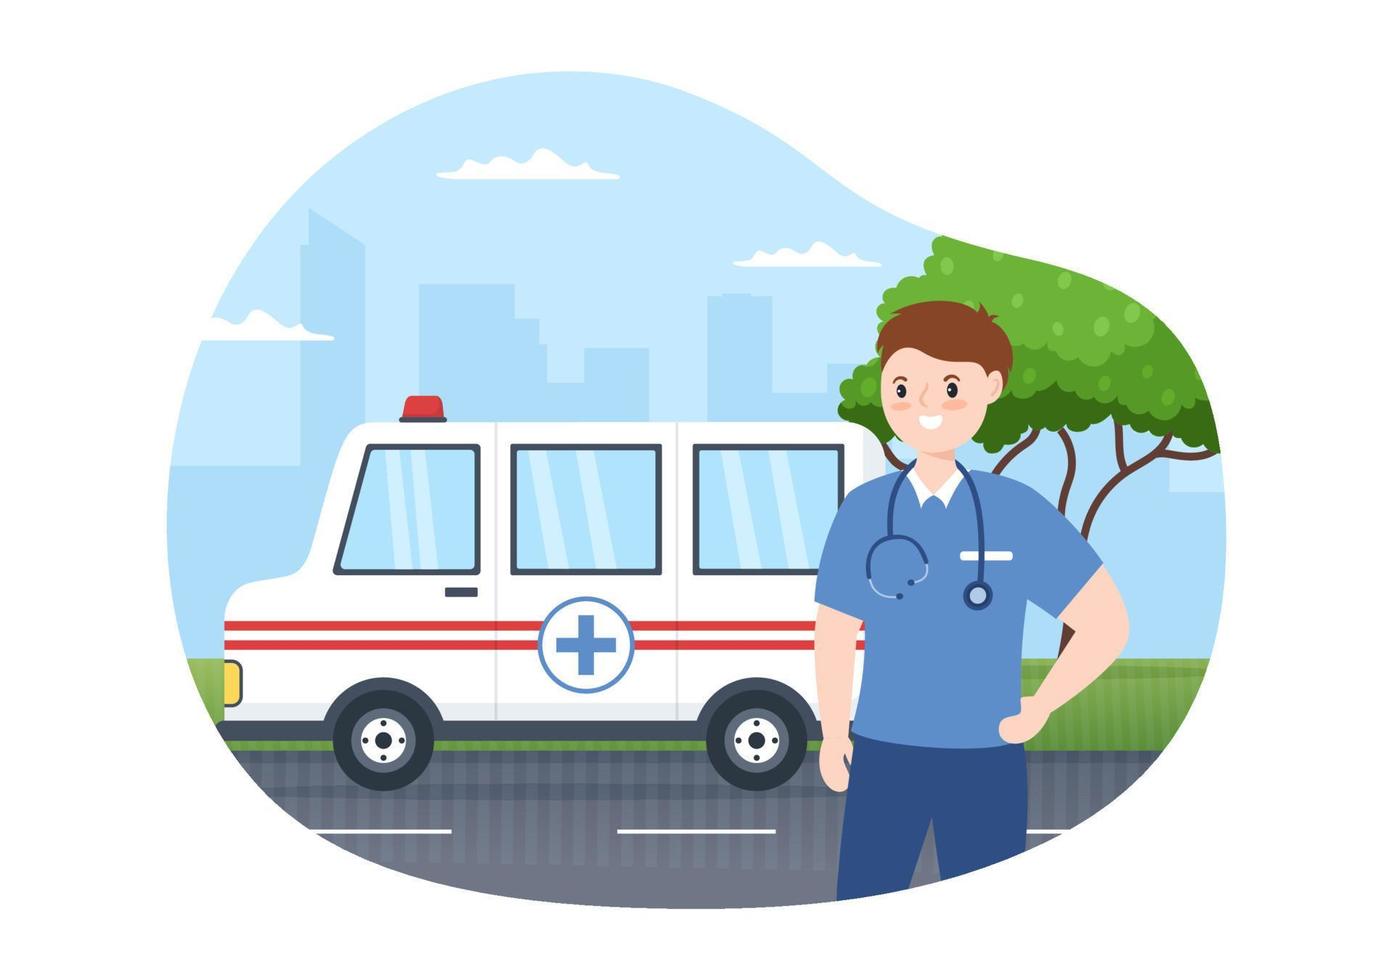 medizinisches fahrzeug, krankenwagen oder notdienst zur abholung des bei einem unfall verletzten patienten in handgezeichneten vorlagenillustration der flachen karikatur vektor